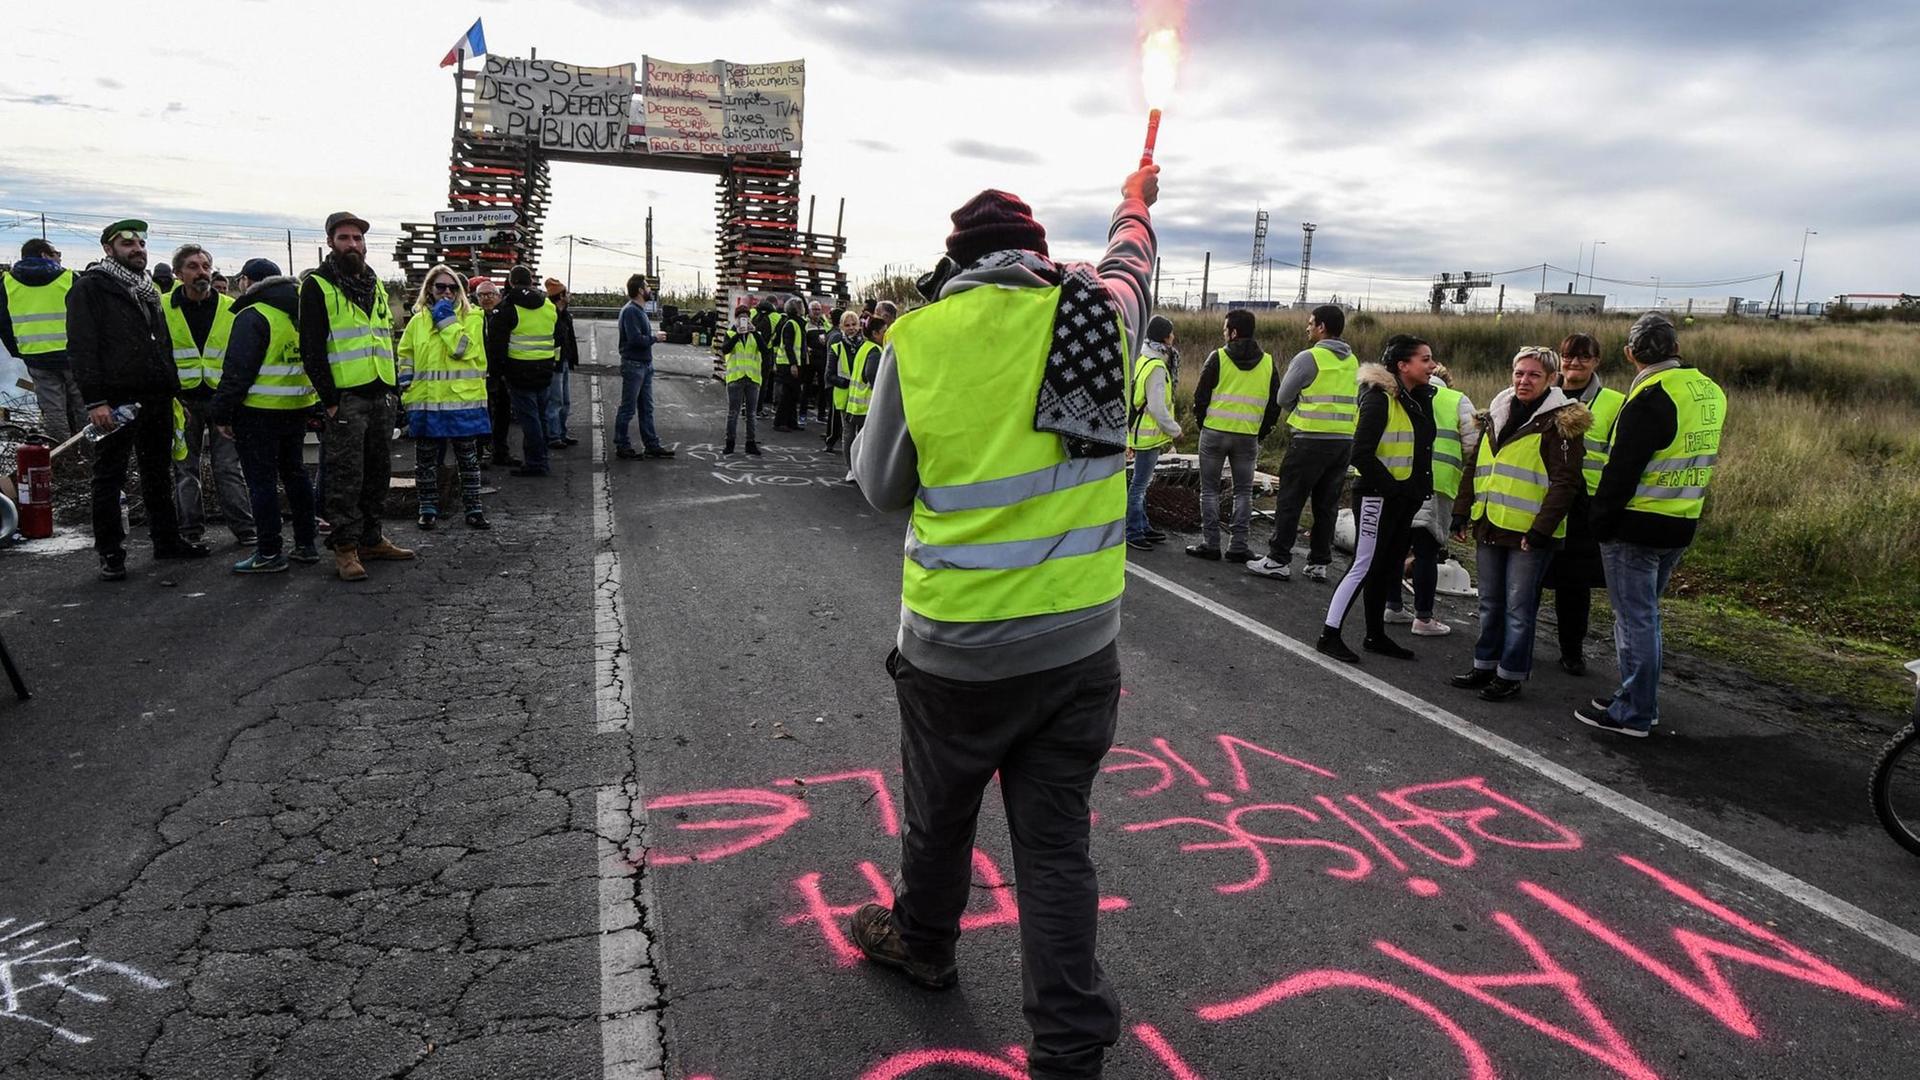 Demonstranten der Gelben Westen (Gilets Jaunes) blockieren die Straße, die zum Öldepot Frontignan in Südfrankreich führt, als sie gegen den Anstieg der Treibstoffpreise und der Lebenshaltungskosten am 3. Dezember 2018 demonstrieren.